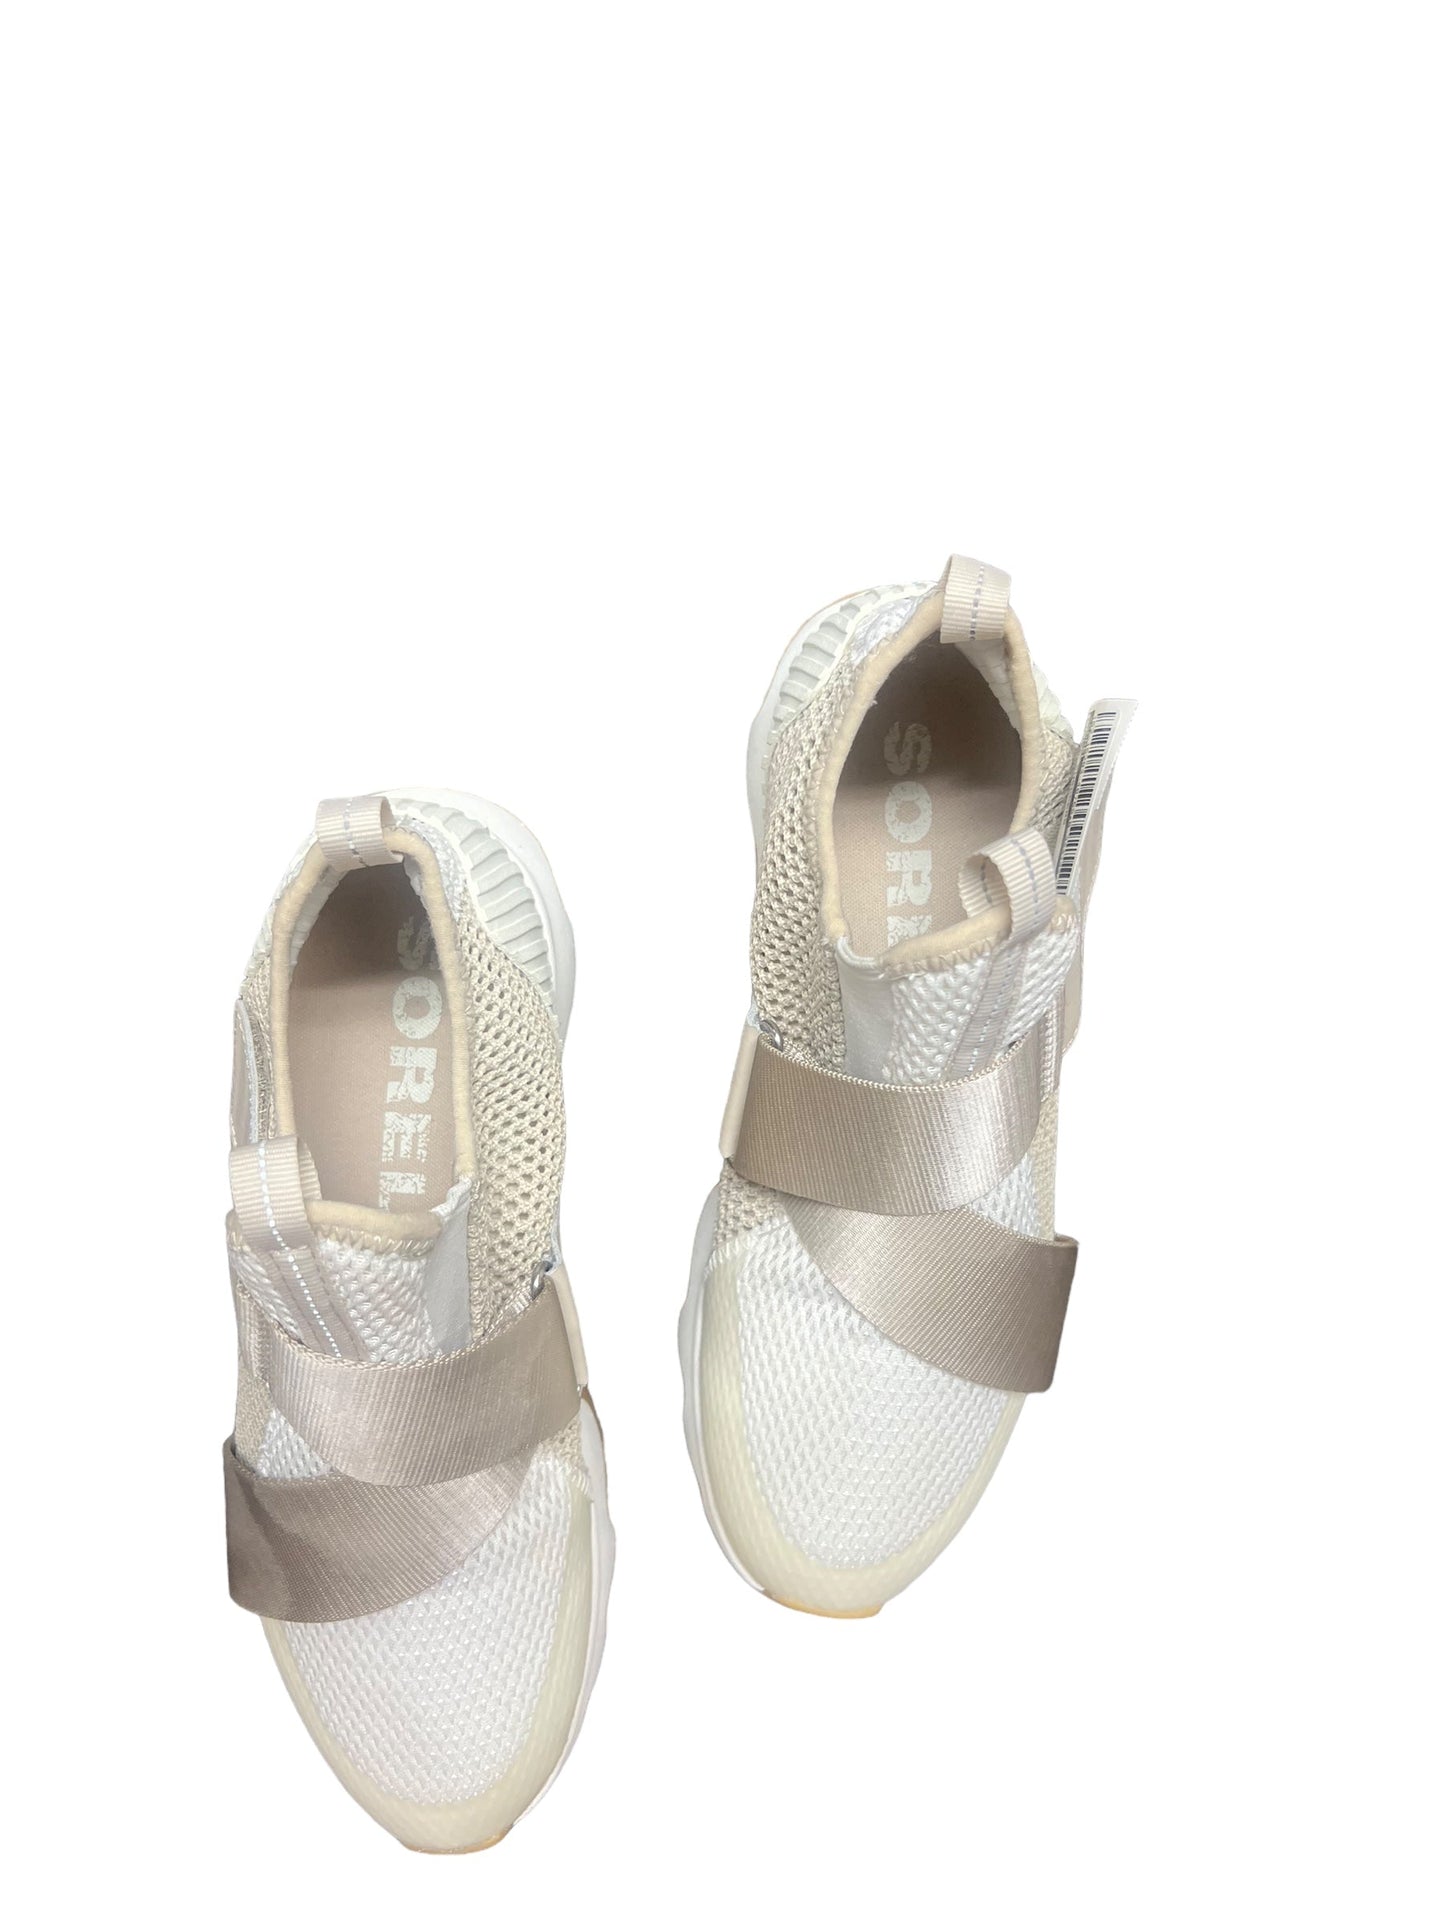 Tan & White Shoes Sneakers Sorel, Size 8